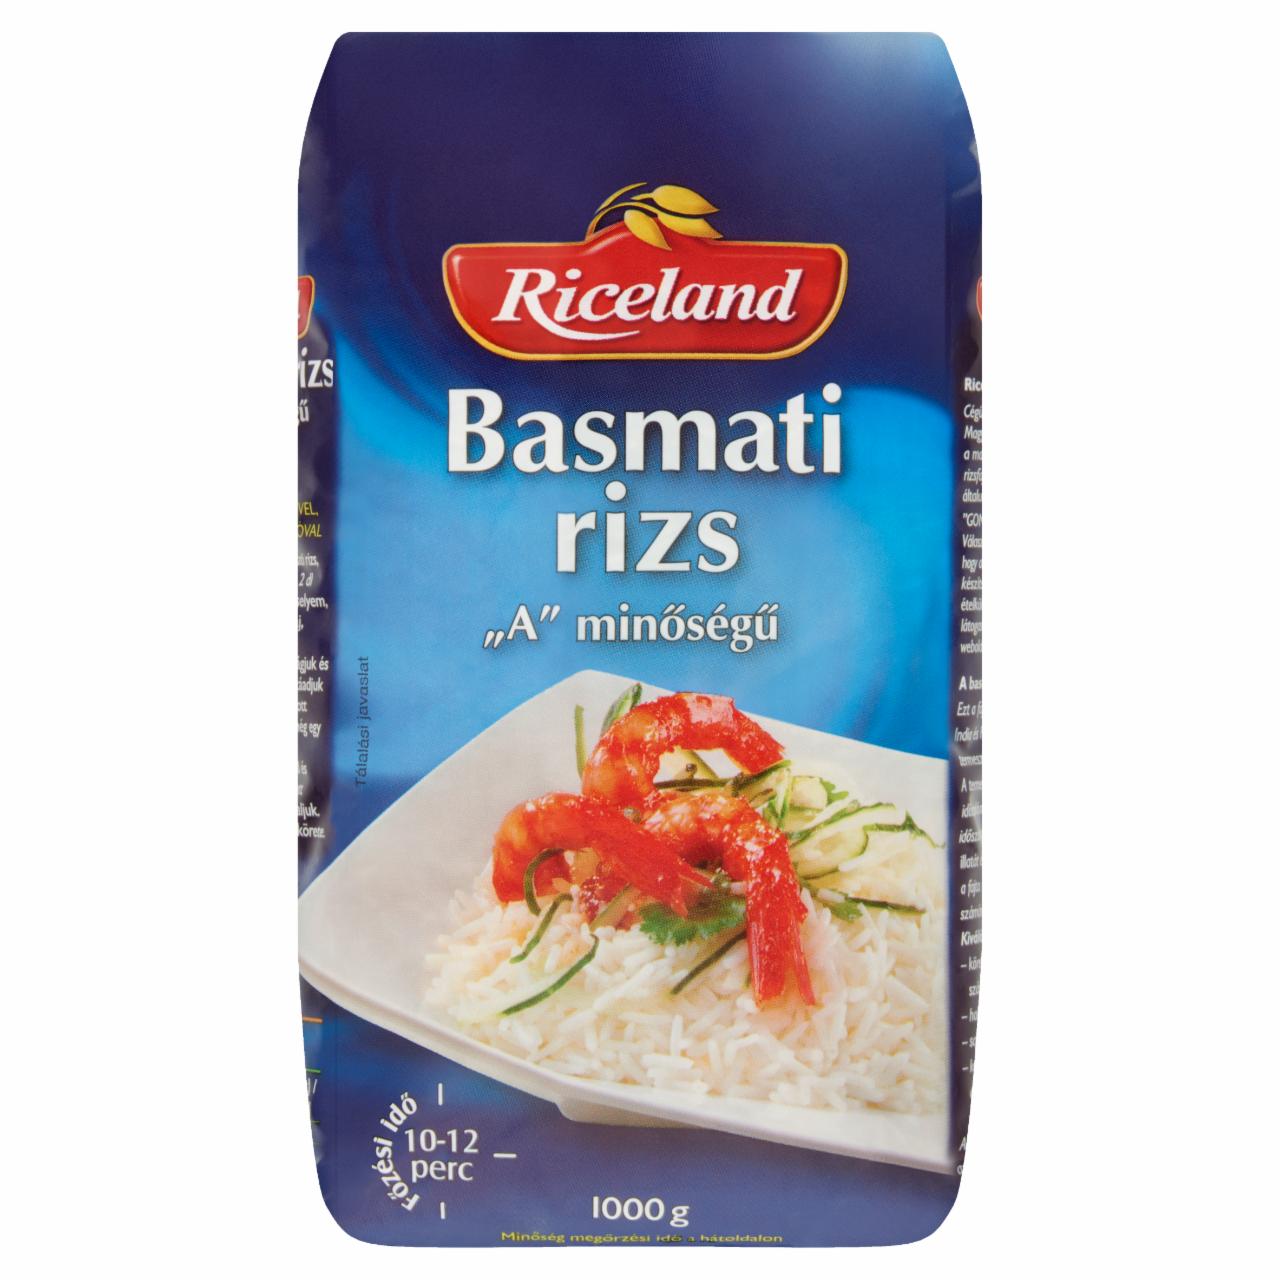 Képek - Riceland „A' minőségű Basmati rizs 1000 g